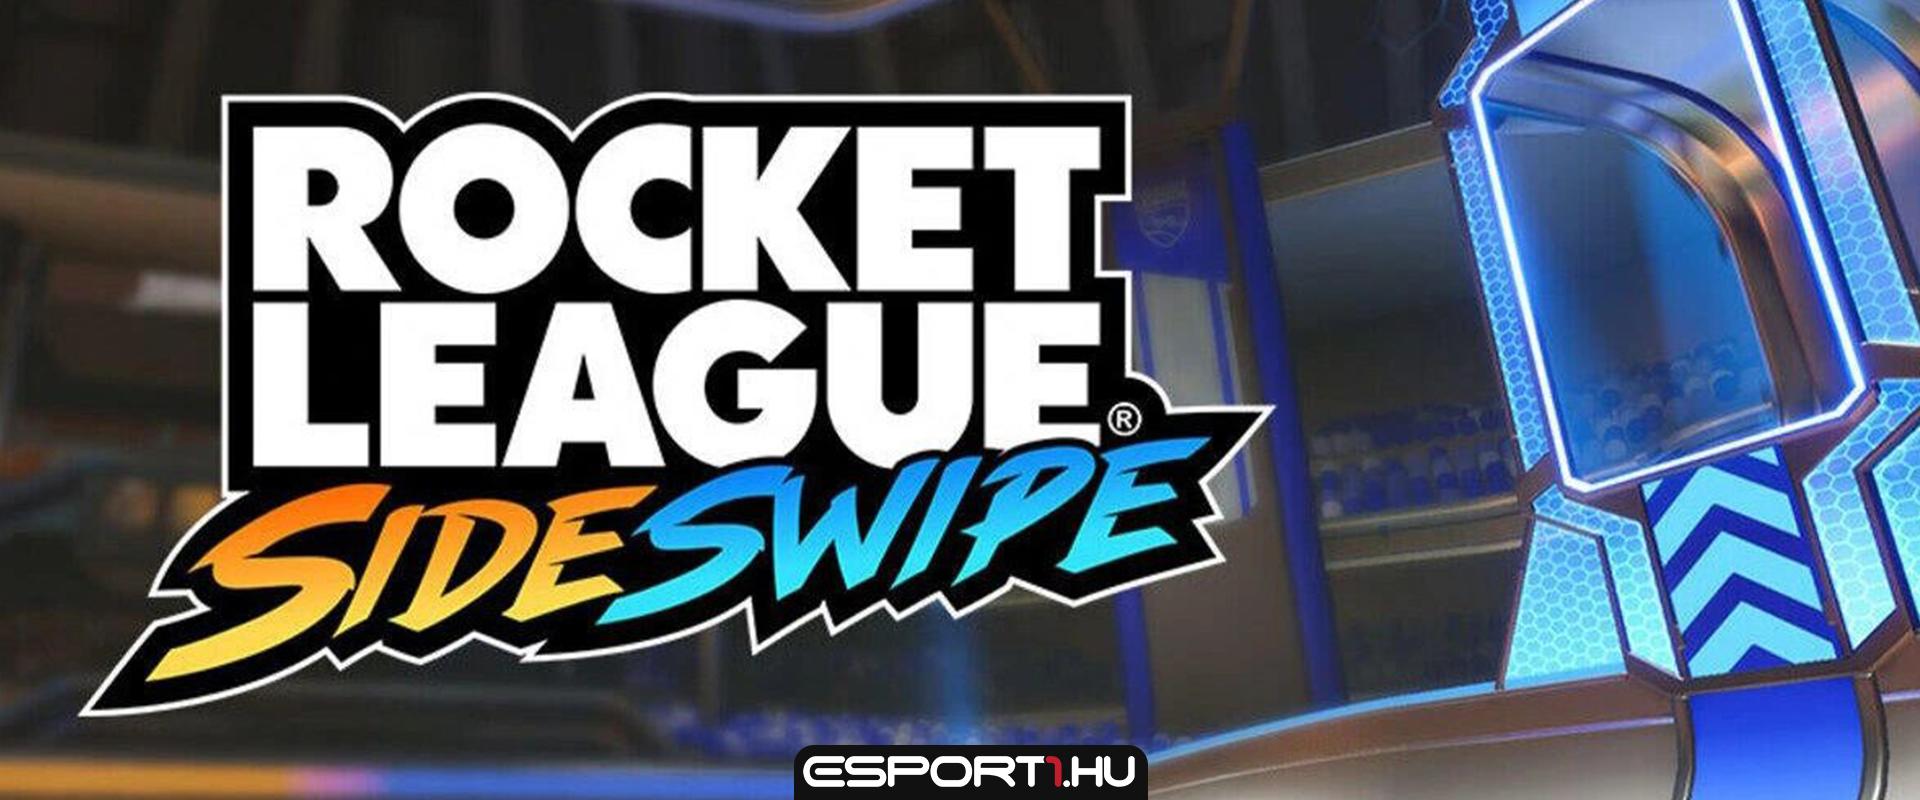 Elérhetővé vált a Rocket League Sideswipe Magyarországon is